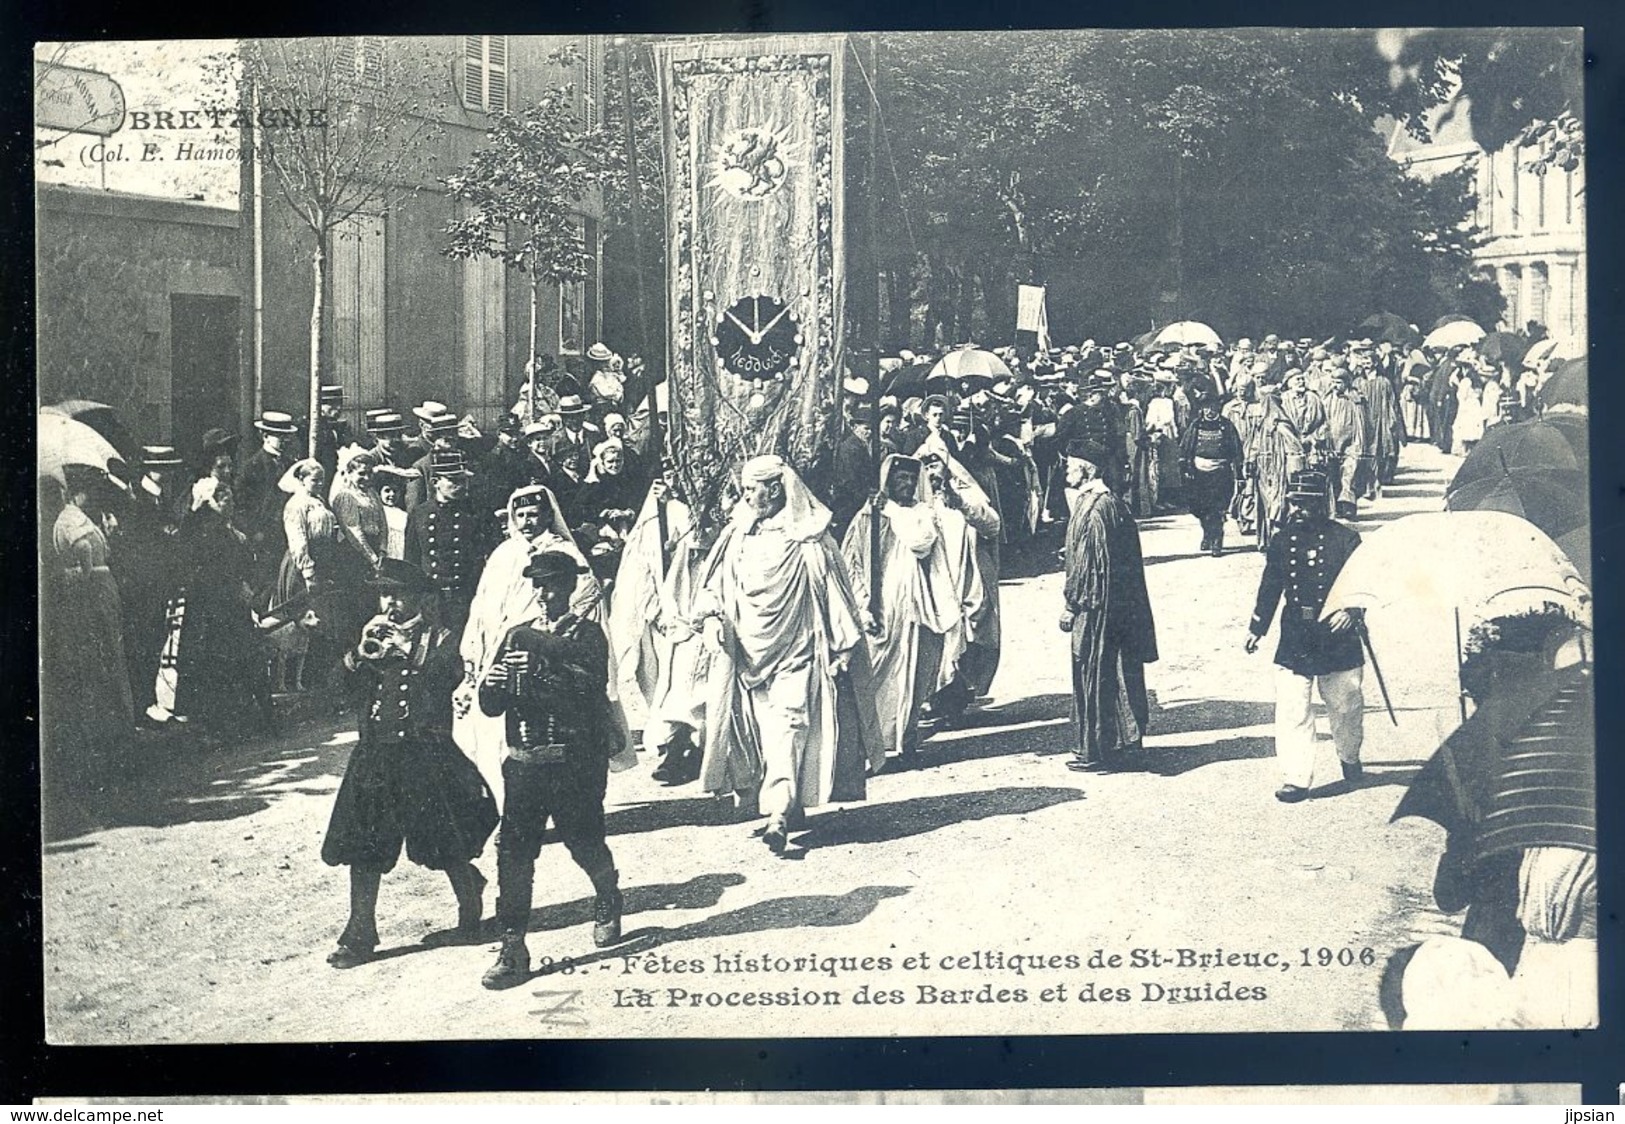 Cpa Du 22 St Brieuc Fêtes Historiques Celtiques 1906 Procession Des Bardes Et Des Druides  LZ26 - Saint-Brieuc